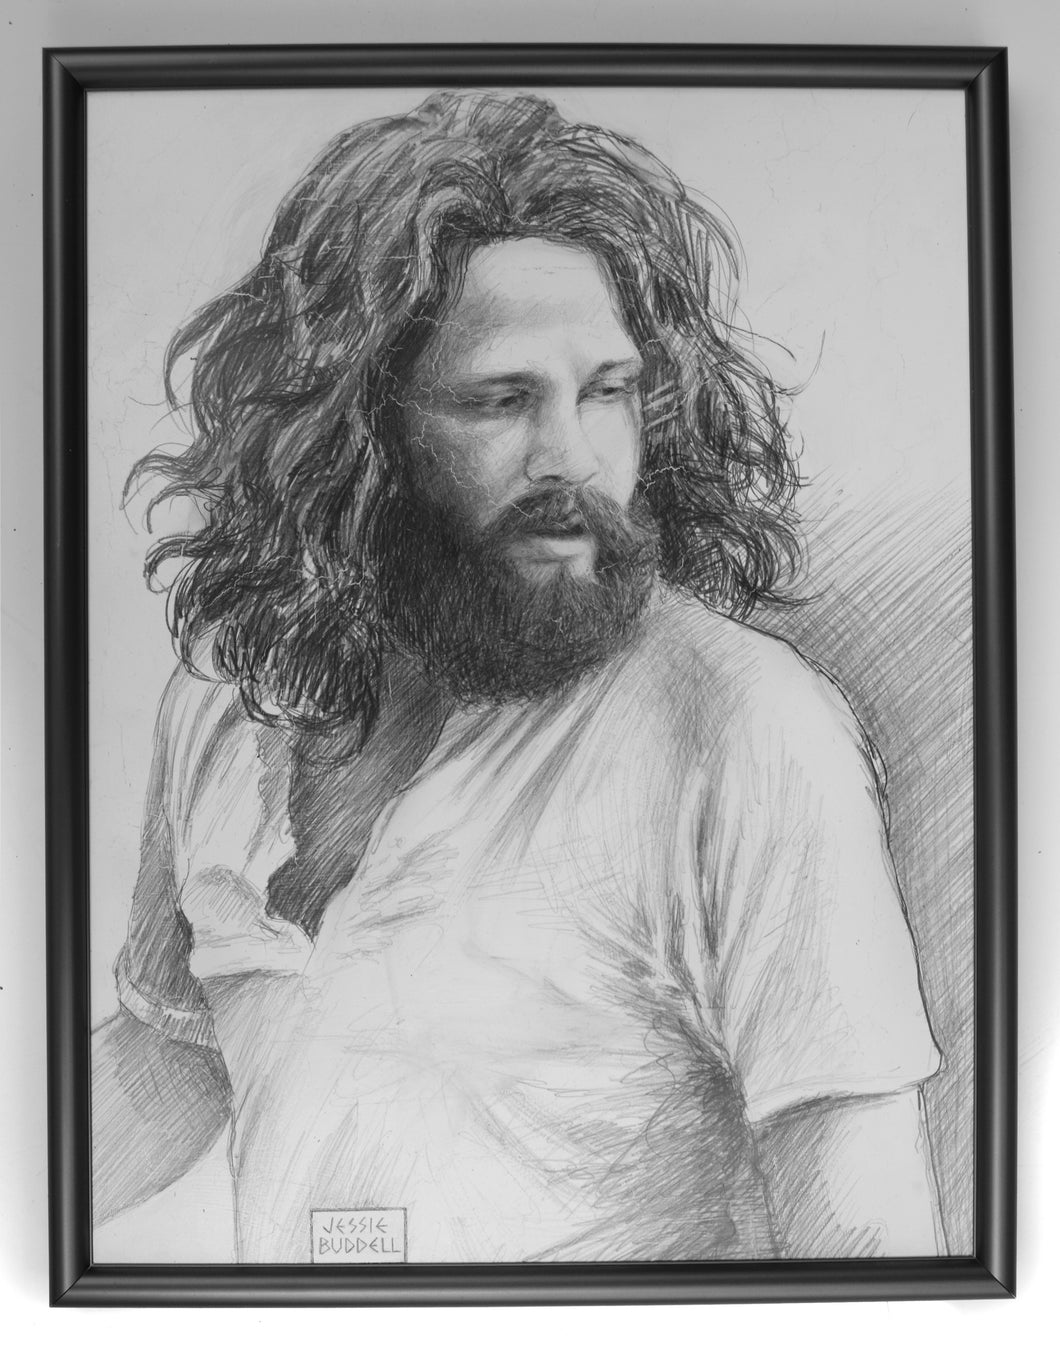 Jim Morrison sketch B